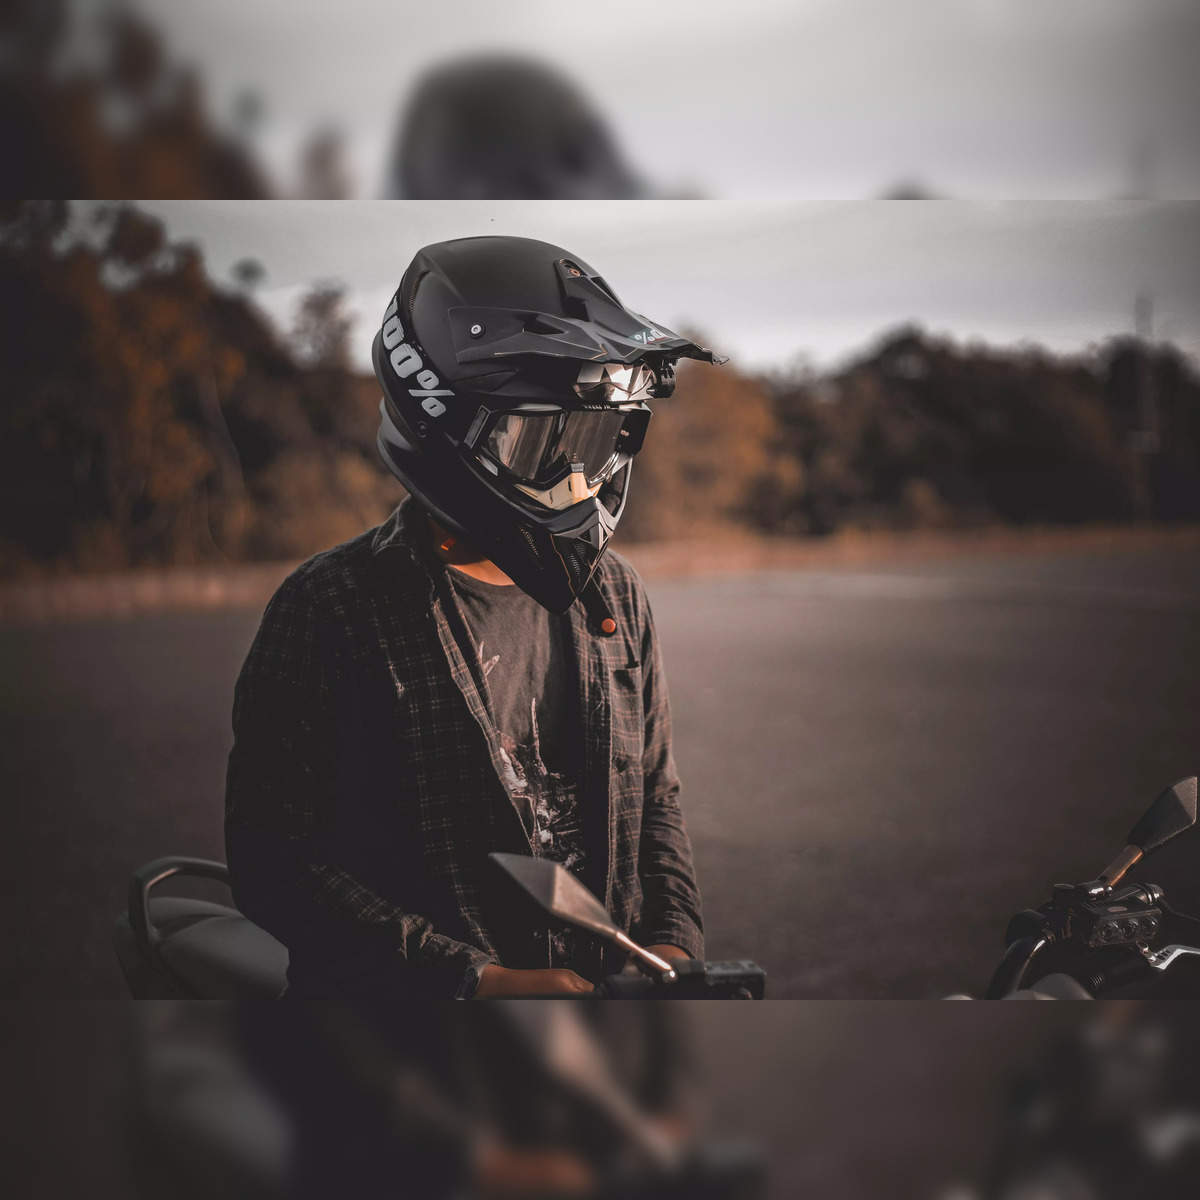 Top 5 Motorcycle Accessories for Your Helmet